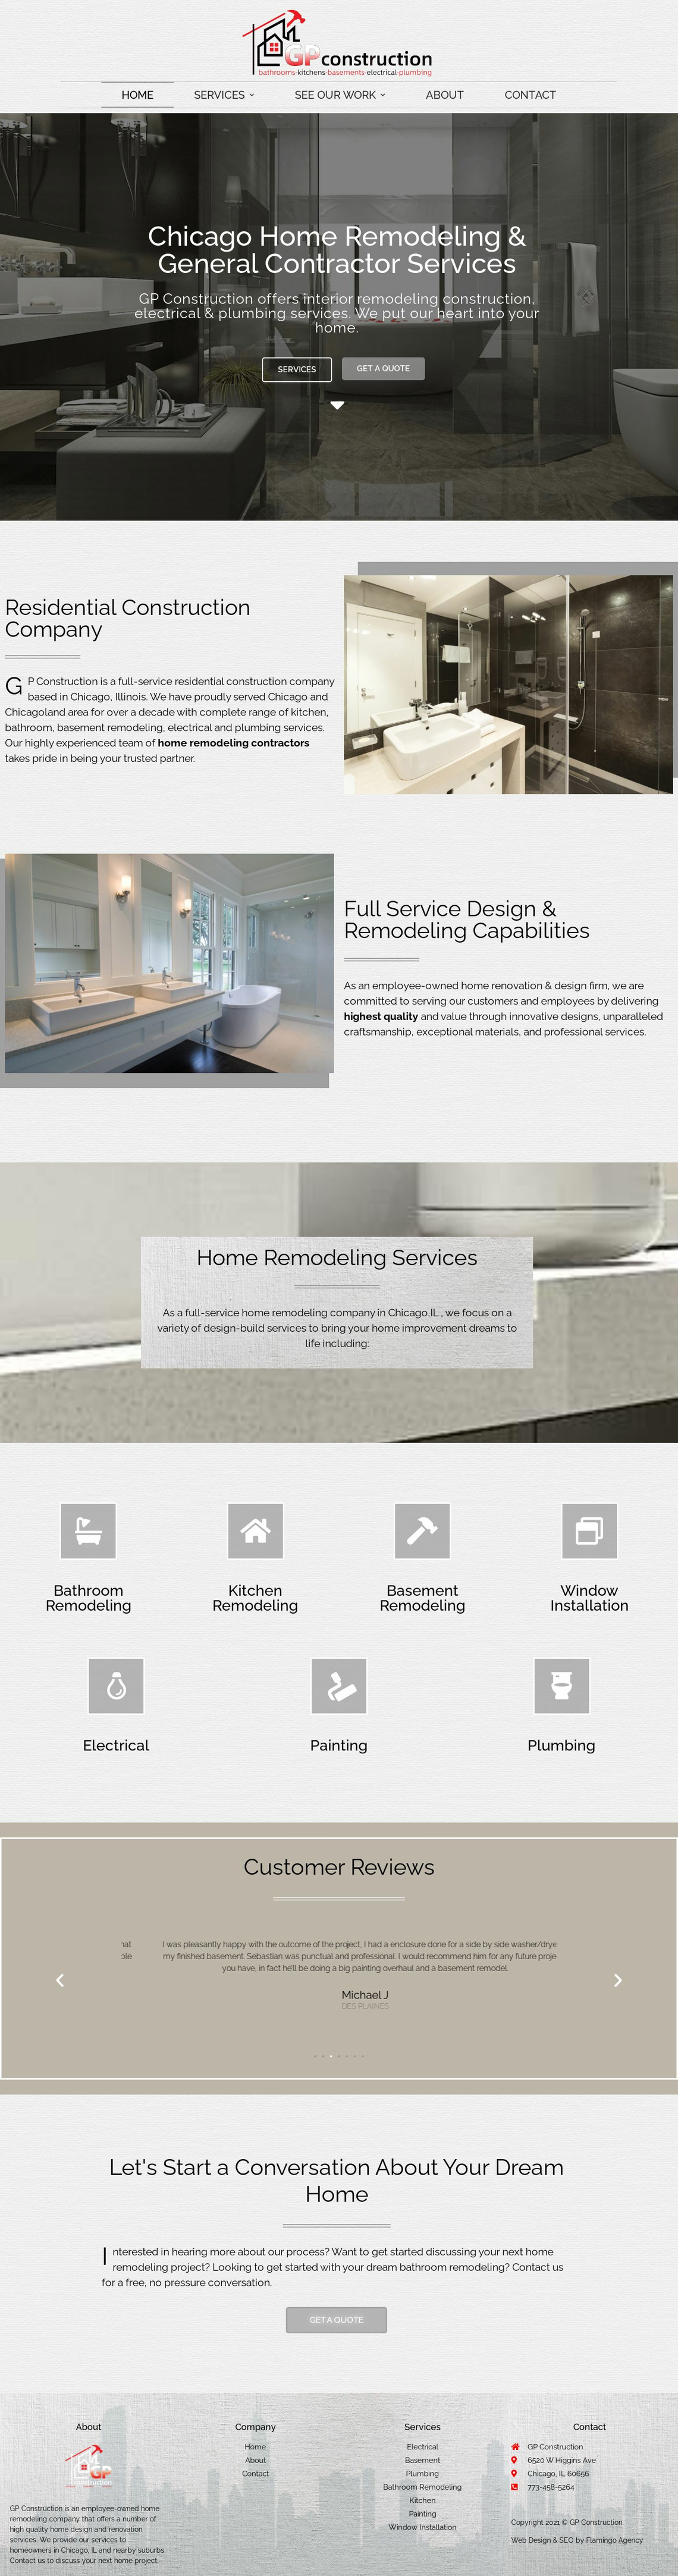 Landing Page Template for Kitchen & Bathroom remodeler - gpconstructionus.com